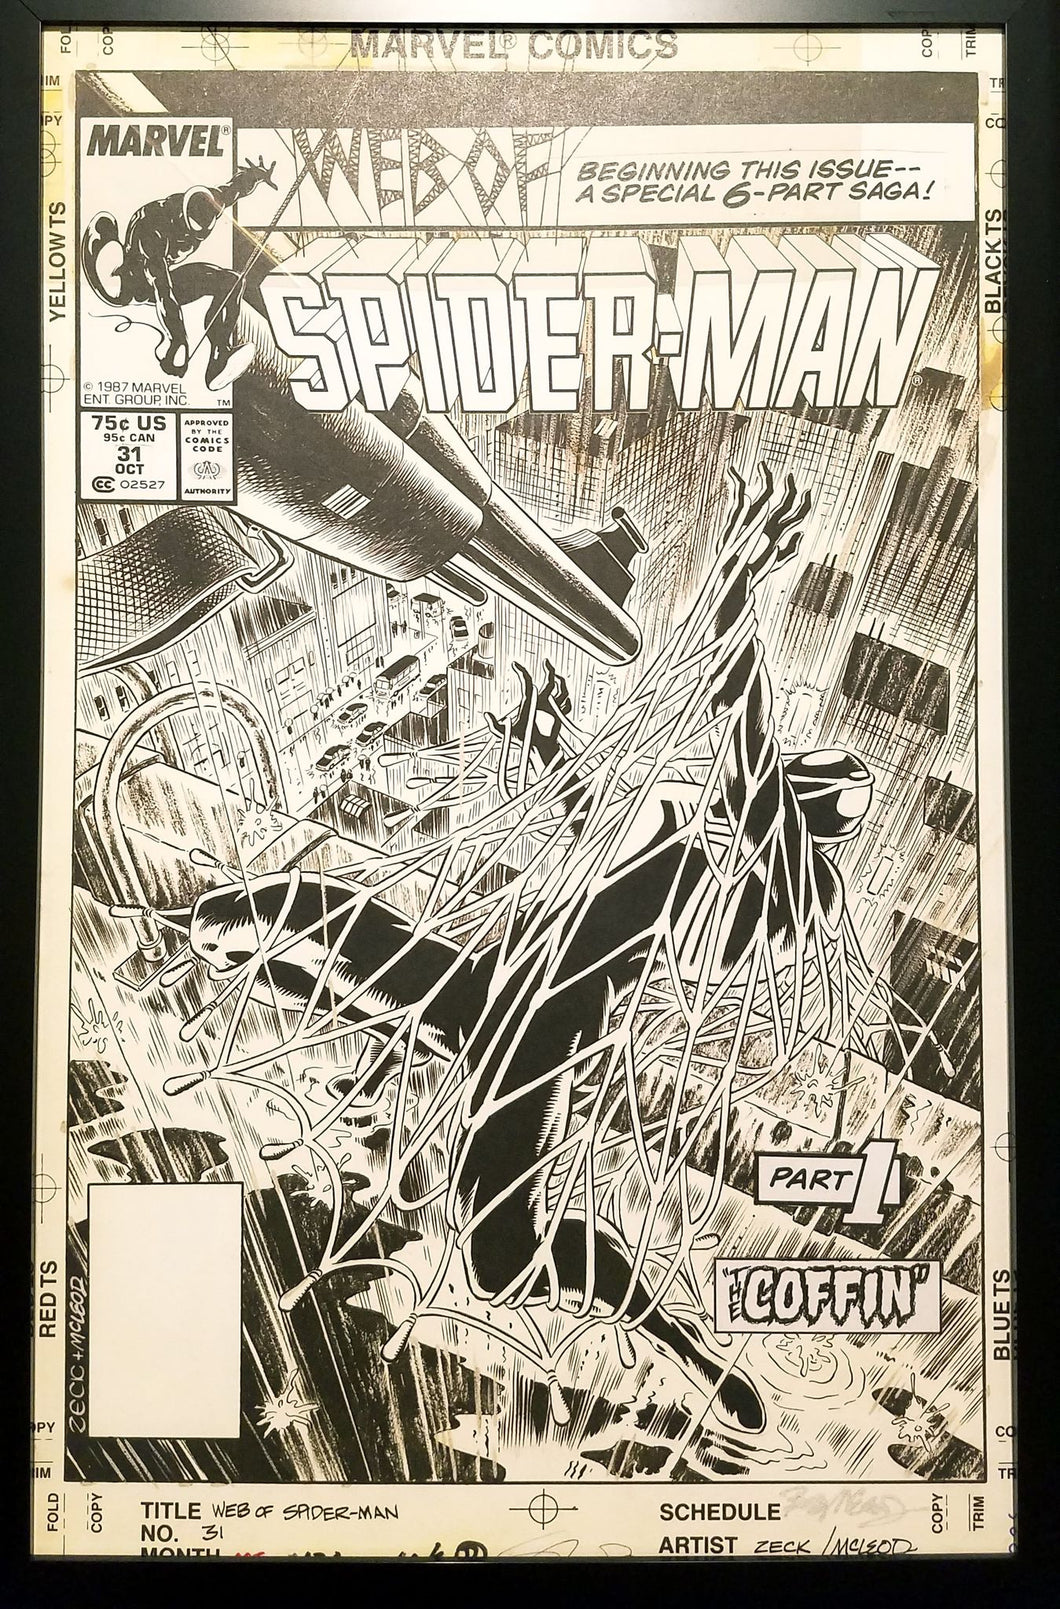 Web Spider-Man #31 Kraven Mike Zeck 11x17 FRAMED Original Art Poster Marvel Comics